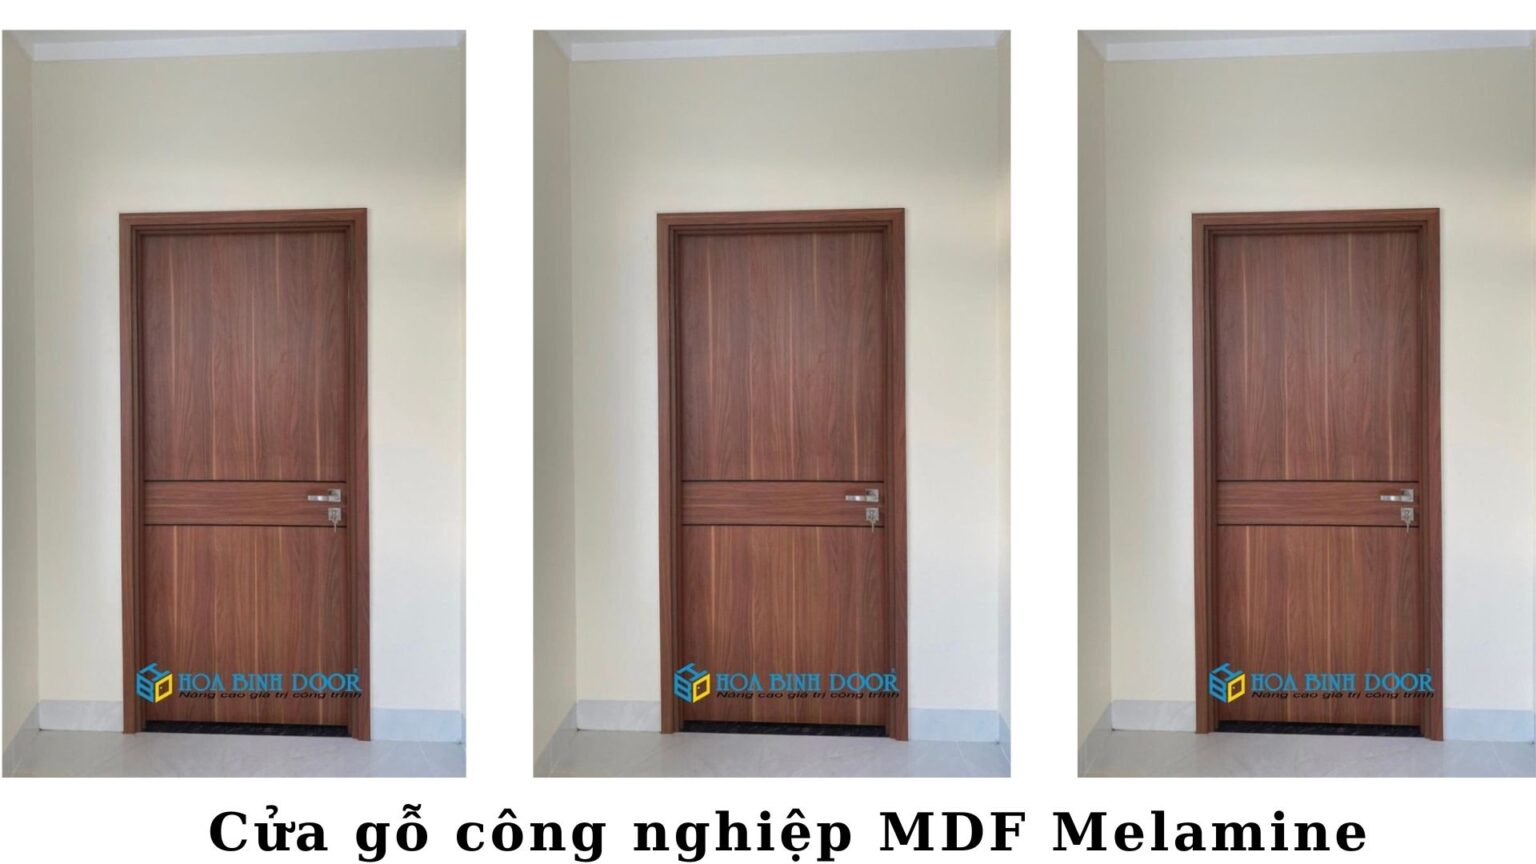 Giá Cửa Gỗ MDF Melamine tại Vĩnh Long  Cửa phòng ngủ